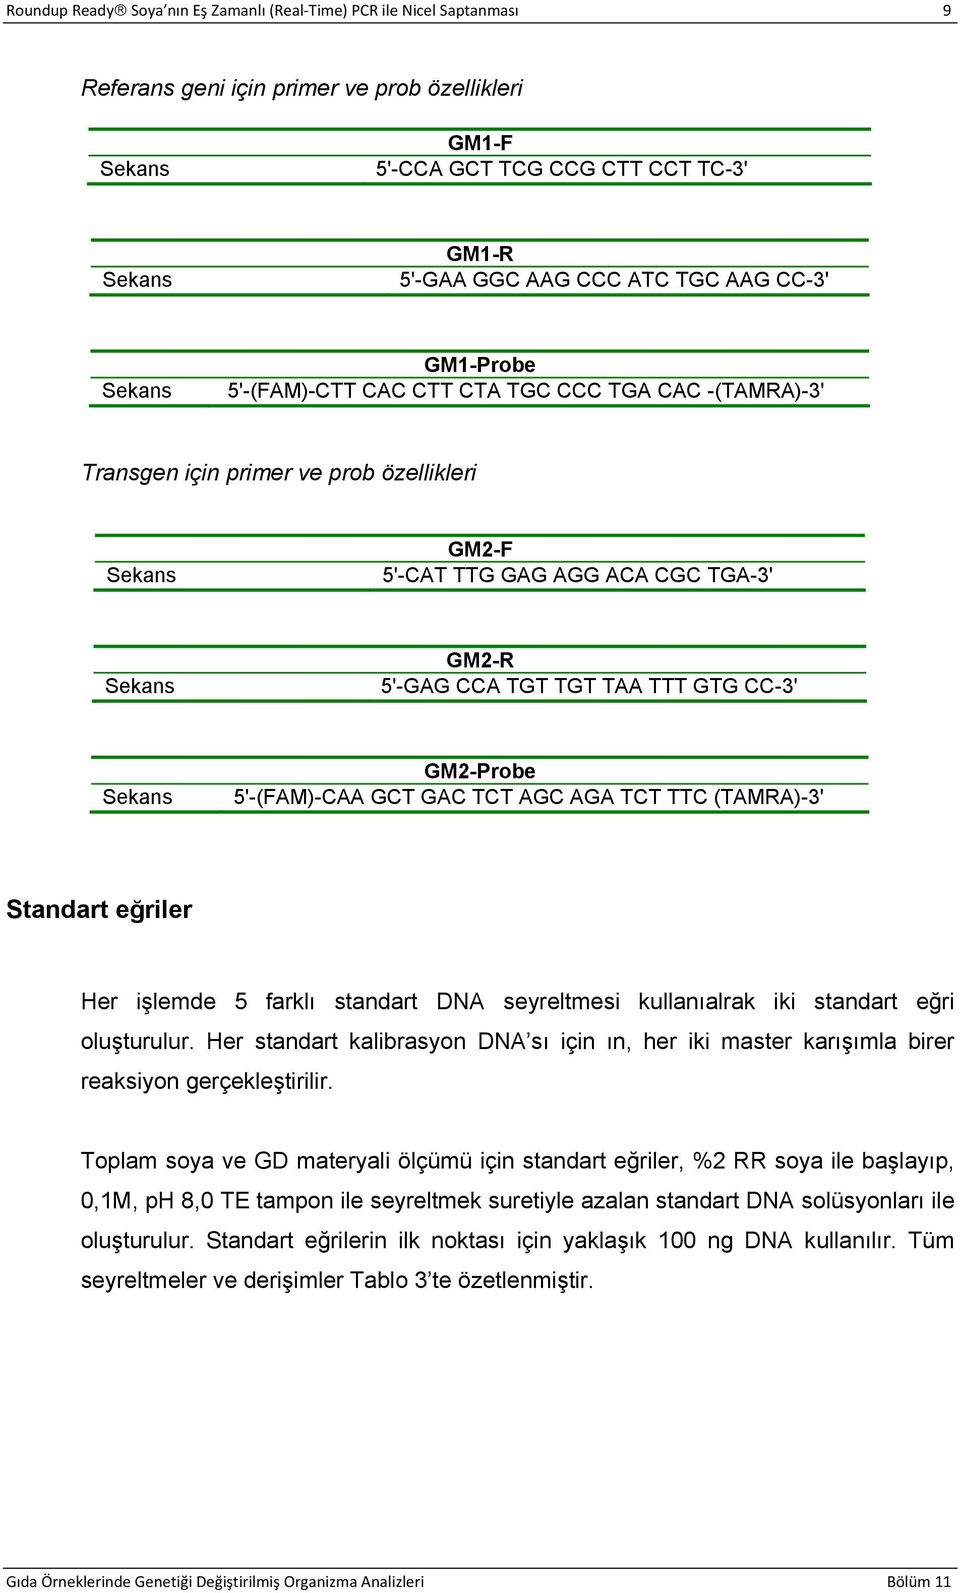 GM2-Probe 5'-(FAM)-CAA GCT GAC TCT AGC AGA TCT TTC (TAMRA)-3' Standart eğriler Her işlemde 5 farklı standart DNA seyreltmesi kullanıalrak iki standart eğri oluşturulur.